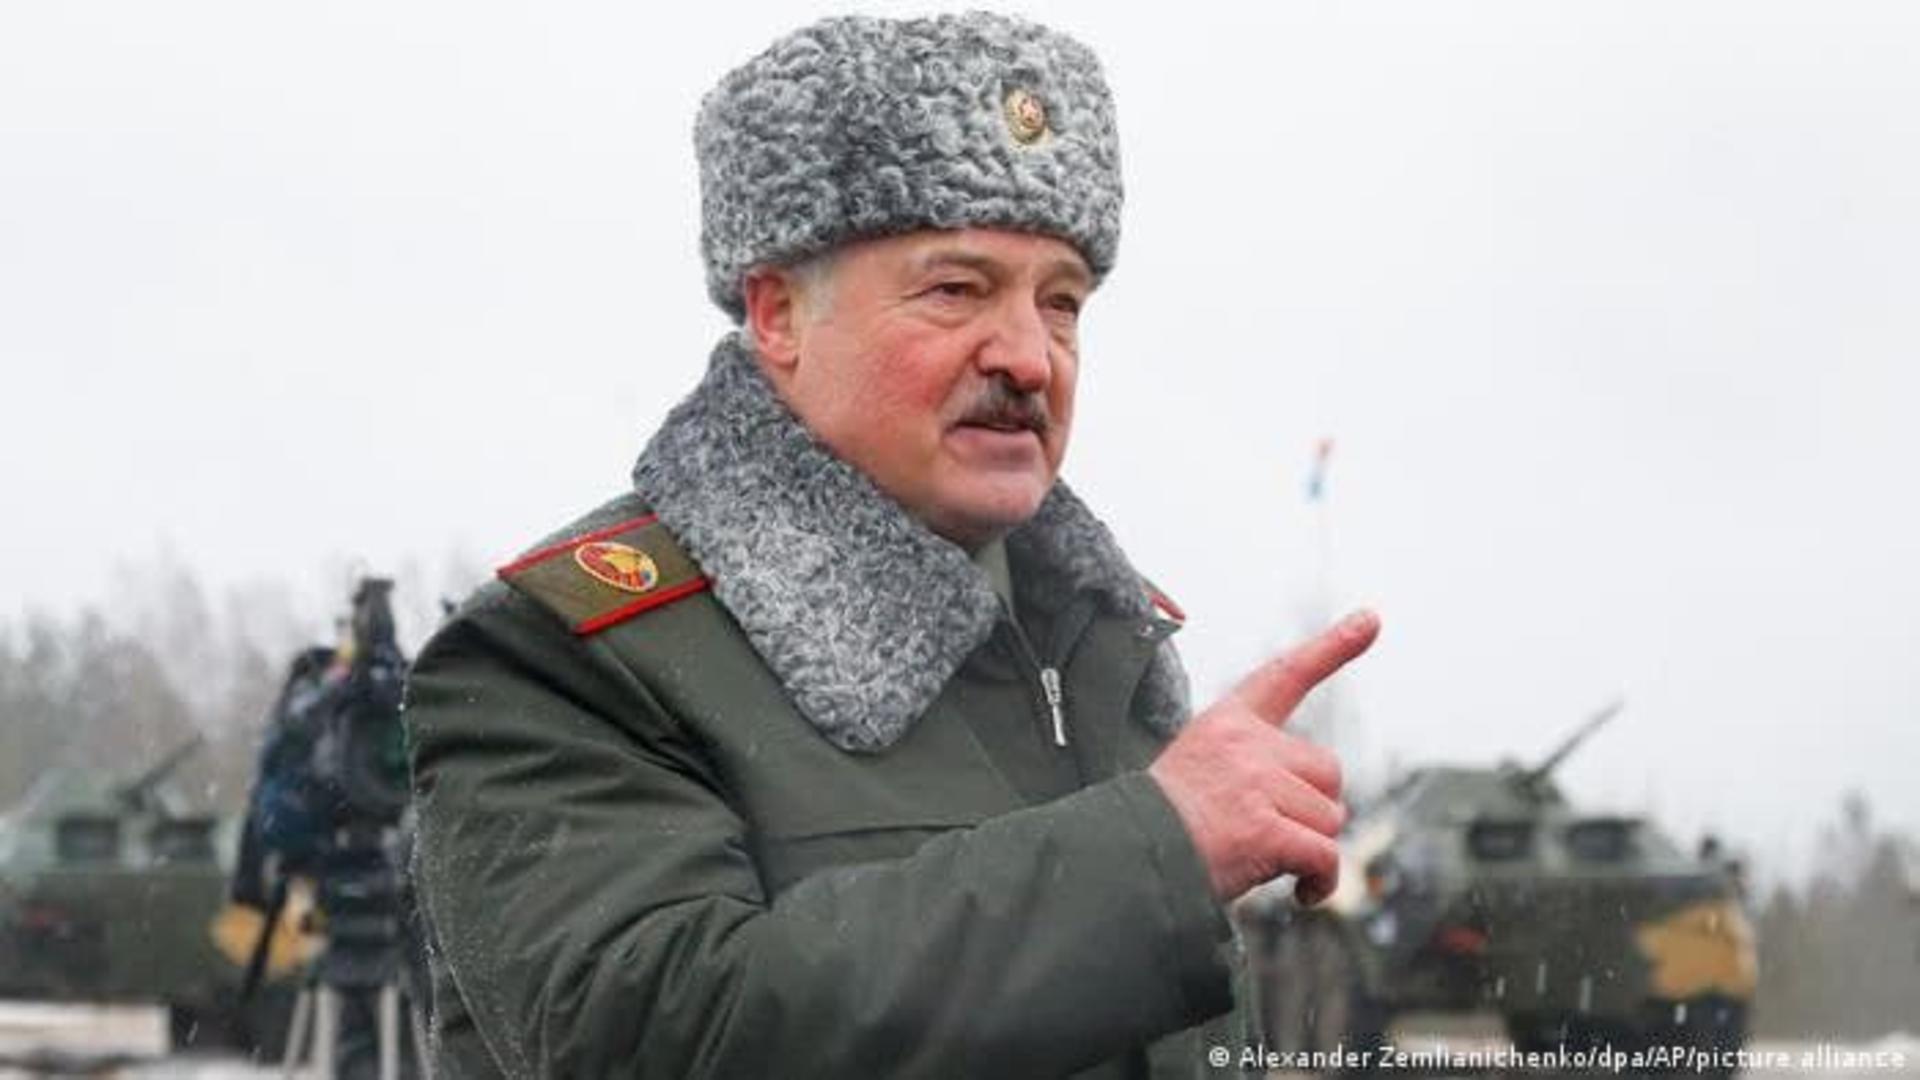 Deși este bun prieten cu Putin, Lukașenko spune că nu îl sprijină. Foto/Profimedia